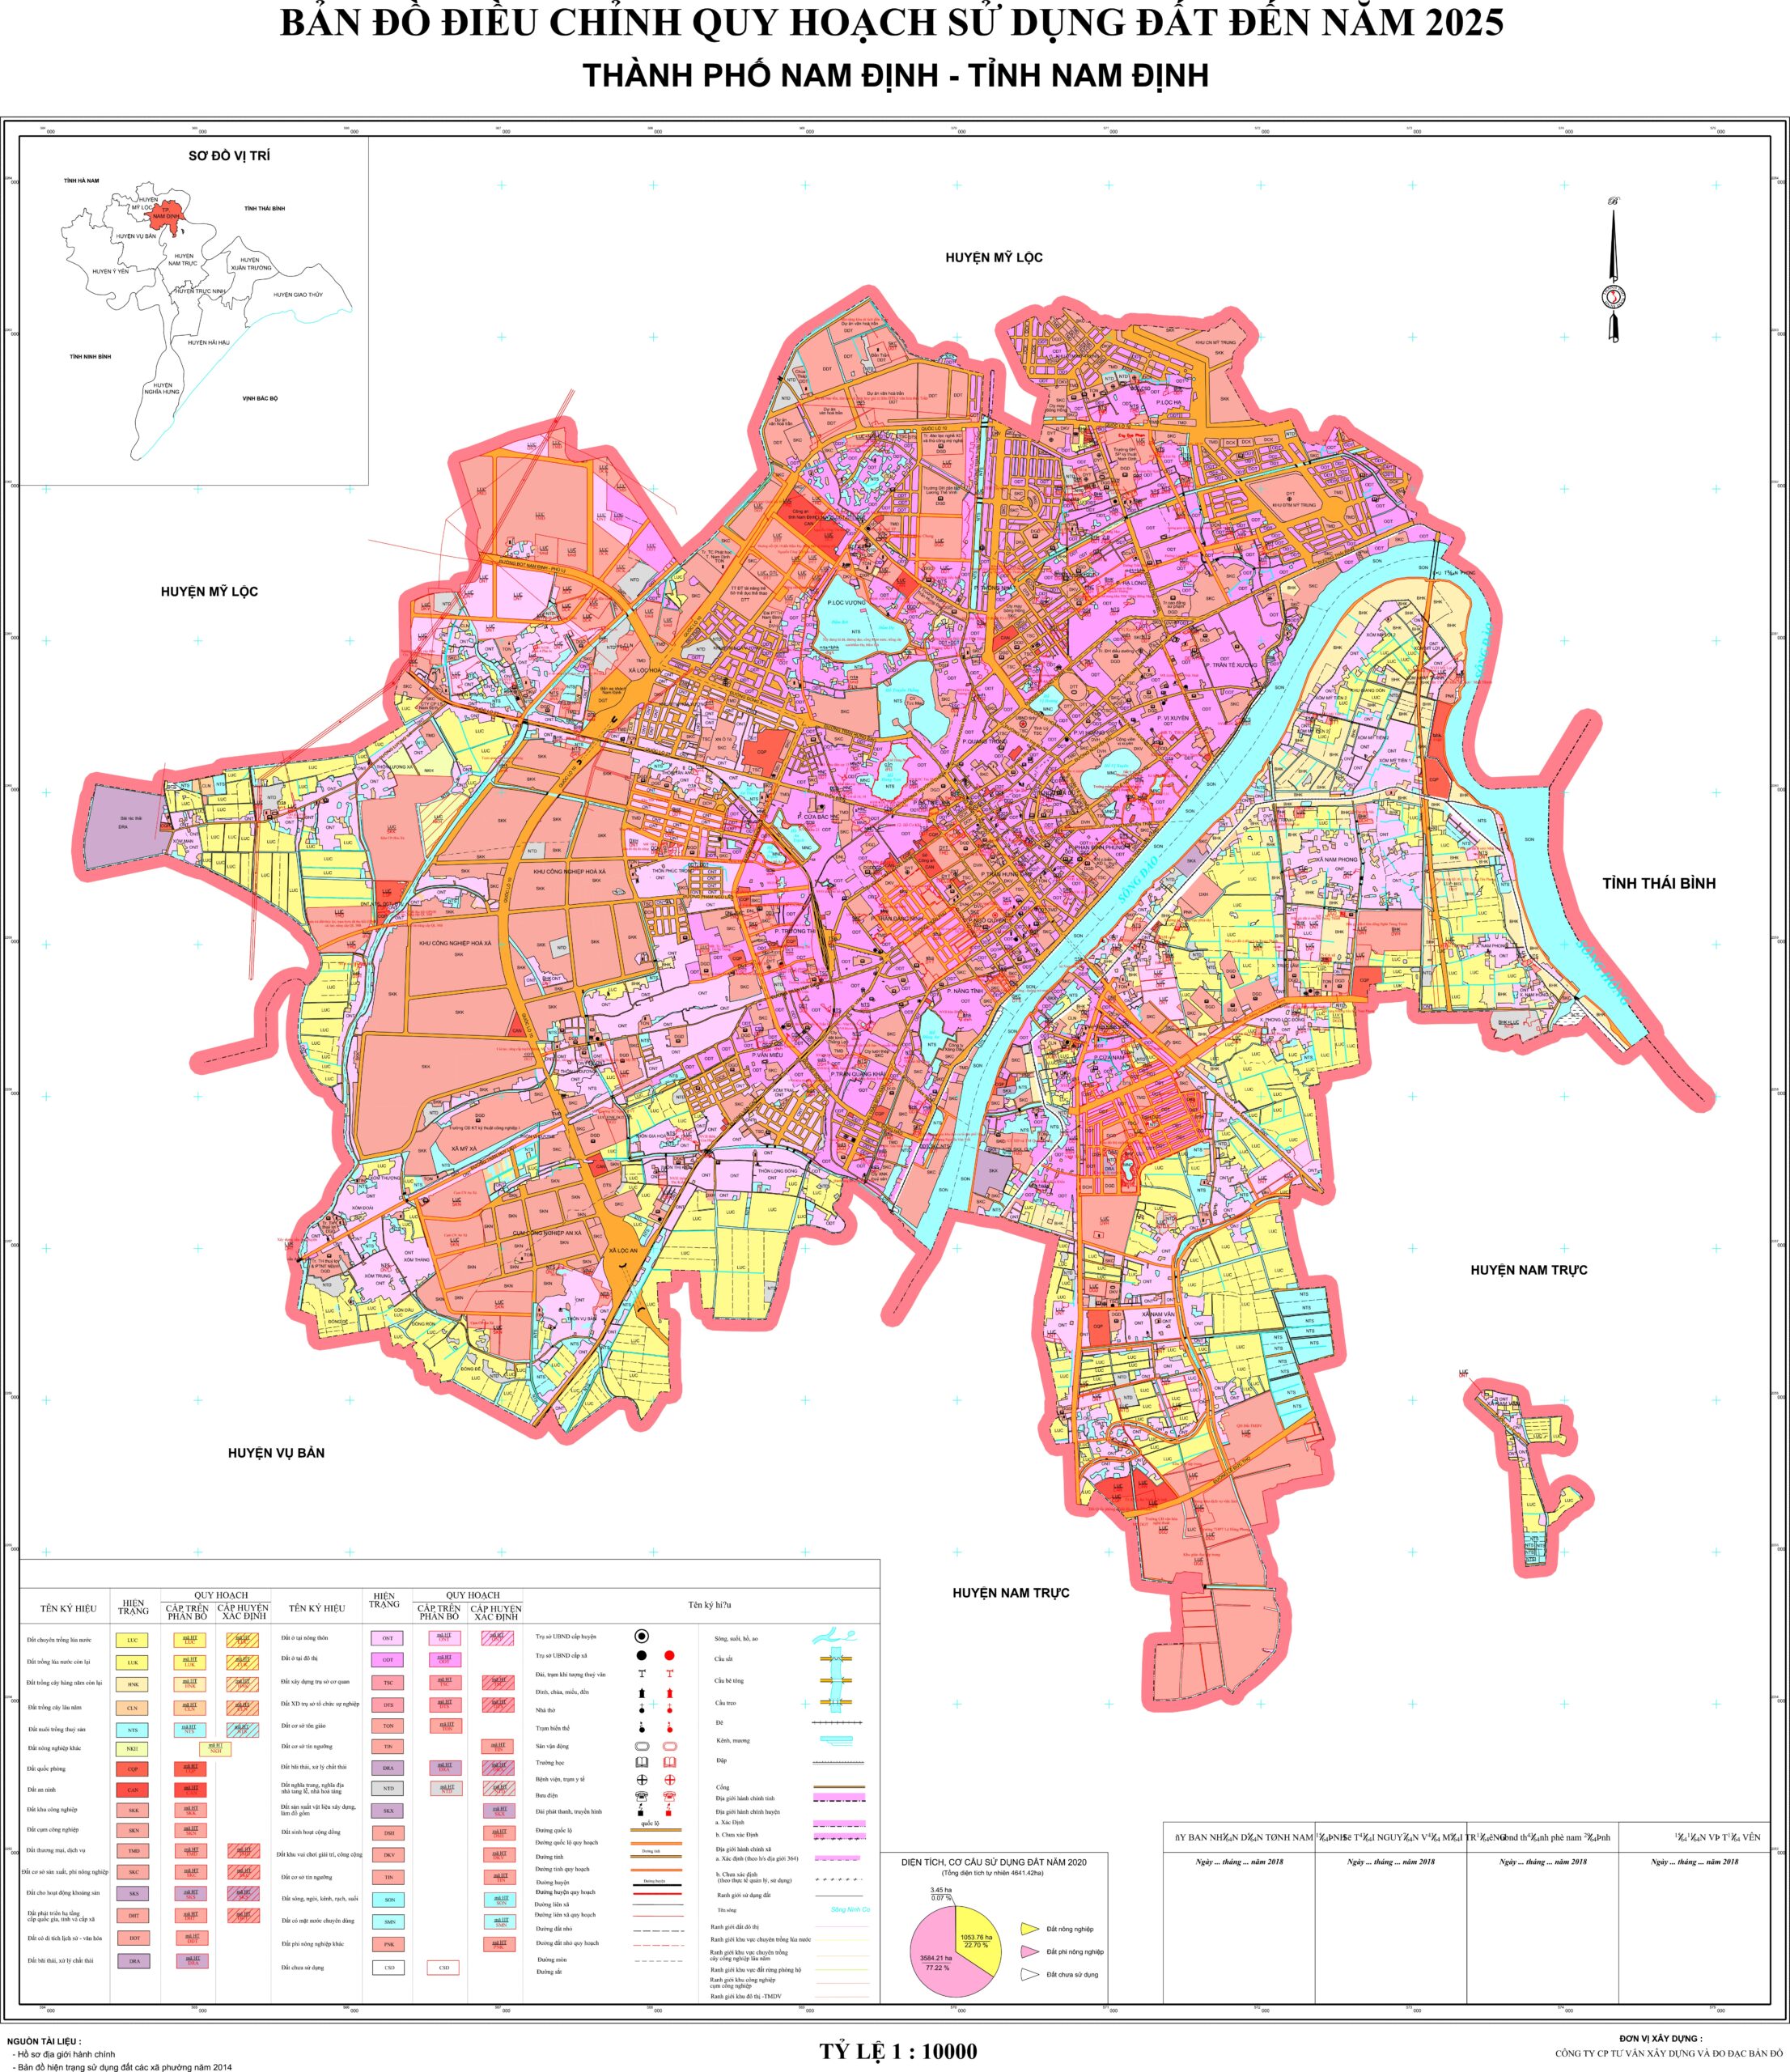 Quy hoạch thành phố Nam Định: Nam Định 2024 đón nhận một tương lai tiềm năng và phát triển. Bản quy hoạch đánh dấu bước ngoặt quyết định cho sự phát triển bền vững của thành phố với các khu đô thị hoàn chỉnh, dịch vụ công cộng hiện đại và cơ sở hạ tầng tiên tiến.